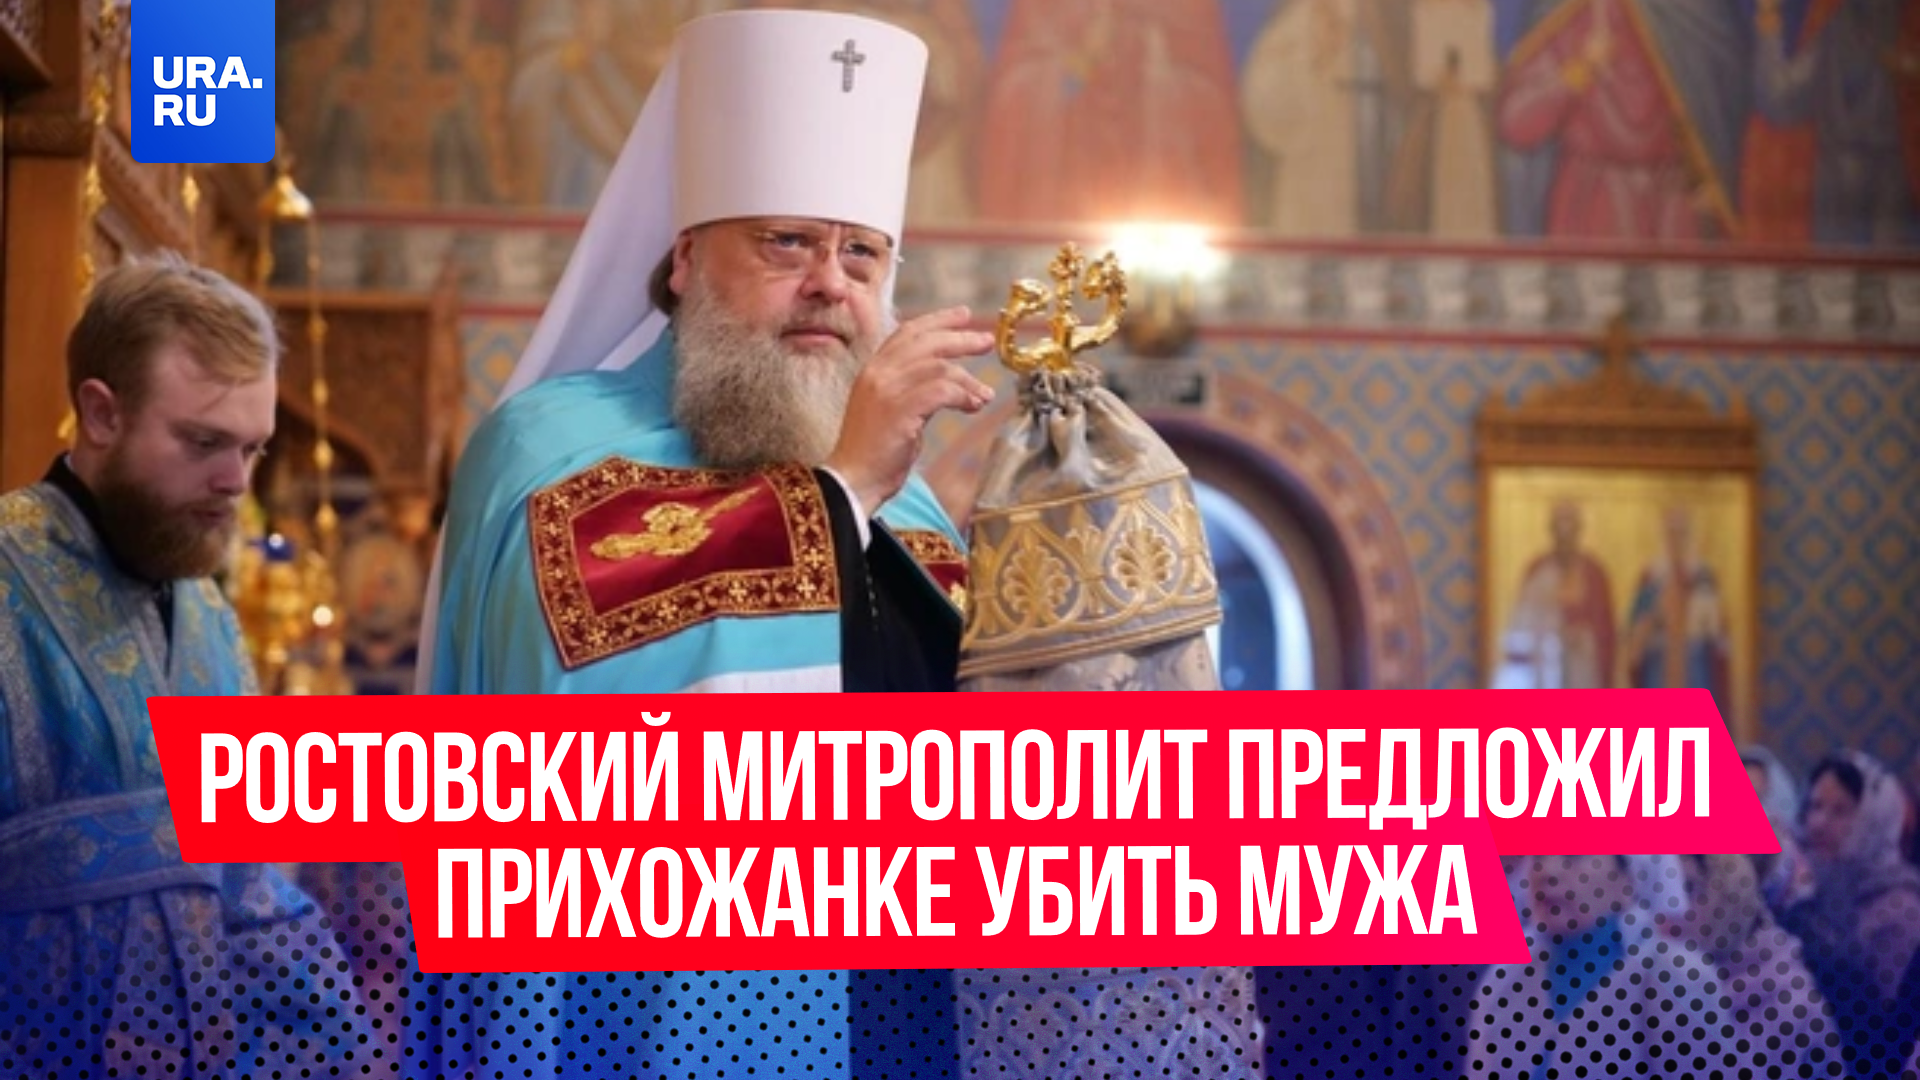 Ростовский митрополит Меркурий предложил прихожанке убить мужа